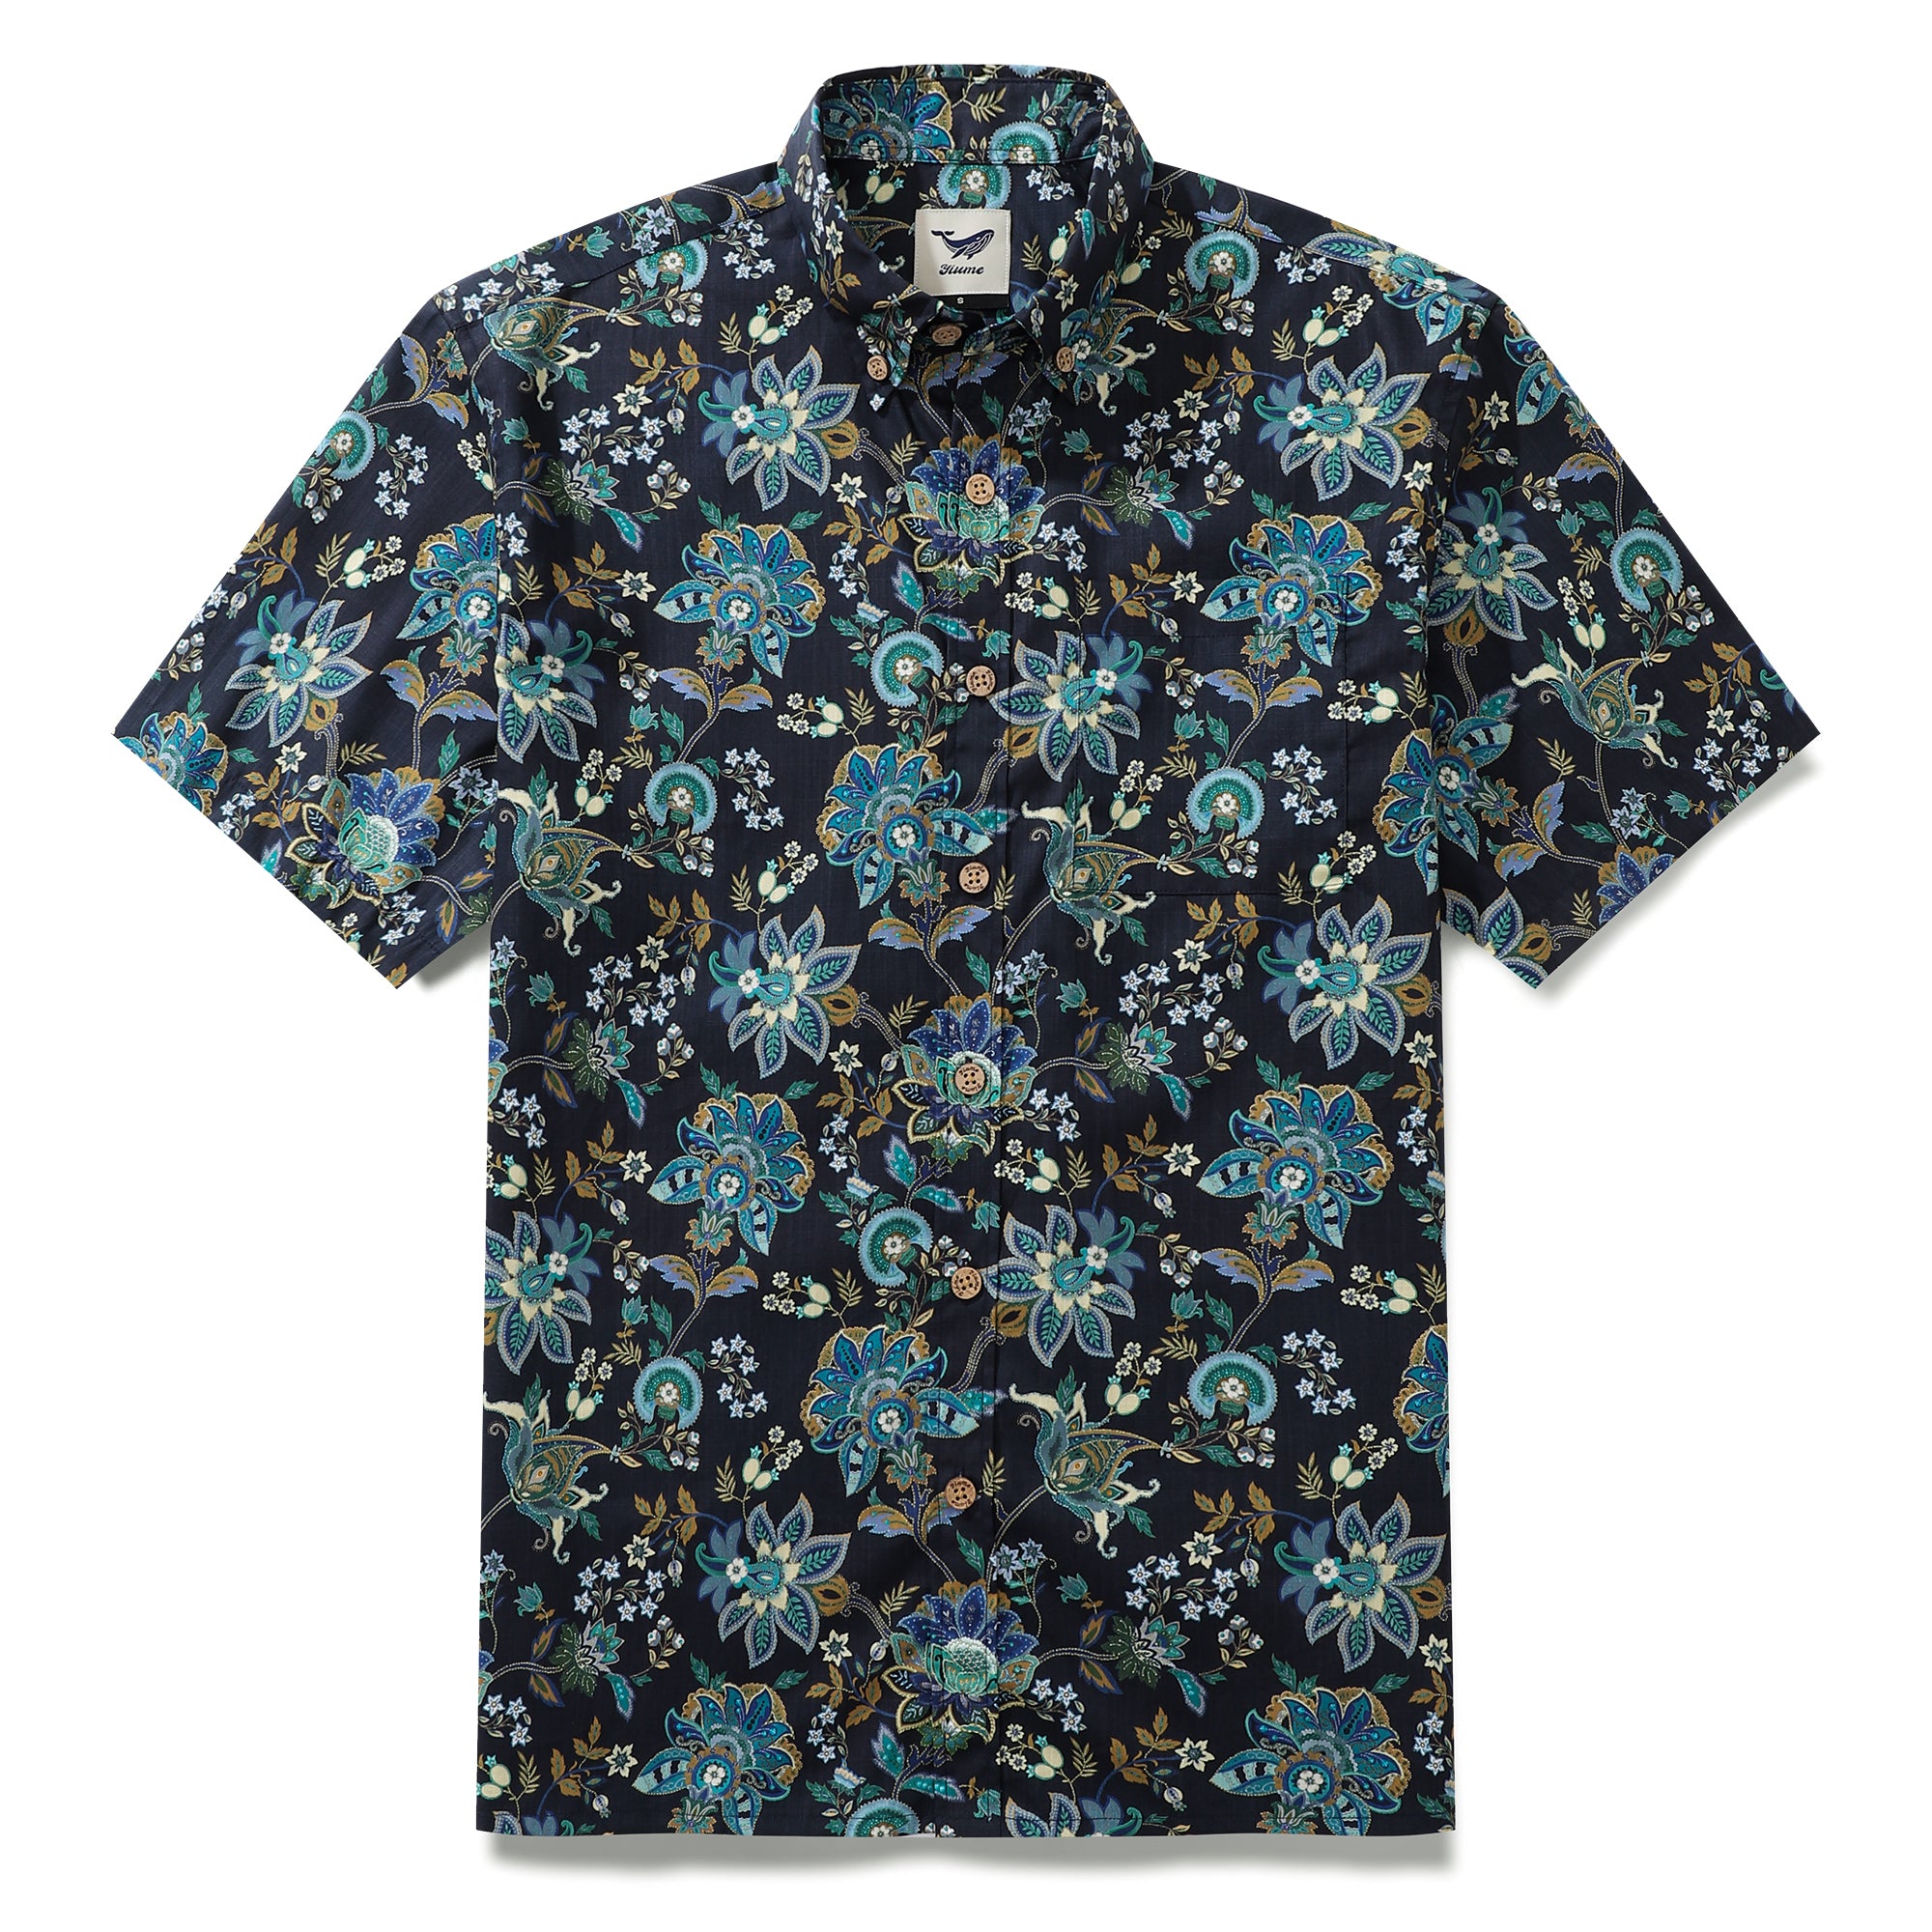 Camisa hawaiana para hombre con botones de algodón de manga corta con estampado de flores de fantasía negra